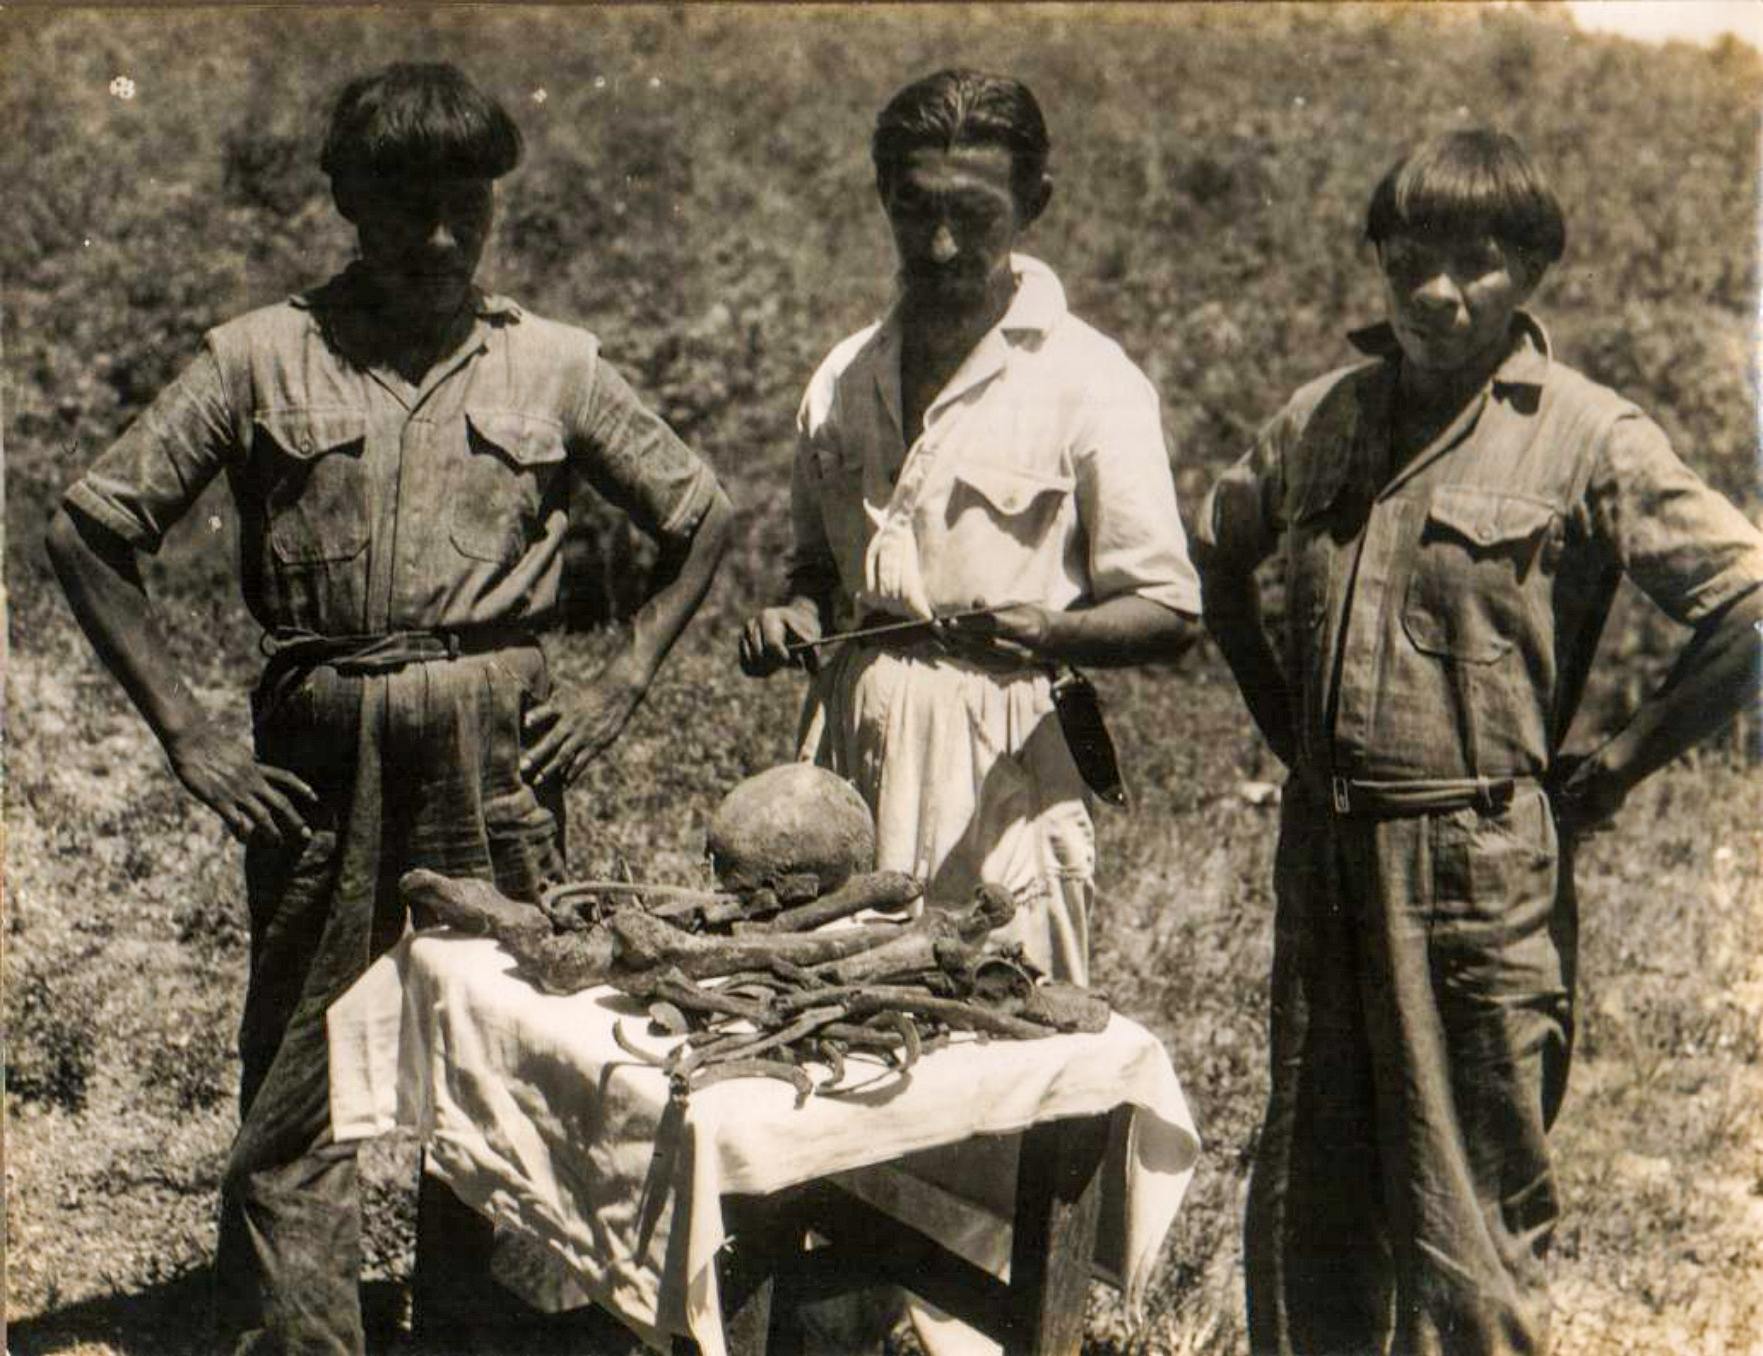 Orlando Villas Bôas en twee Kalapalo-indianen met Cel's bot. Fawcett gevonden op de exacte plek waar de oudsten haar dood vertelden. 1952 foto. CVB-archief van de familie Villas Bôas